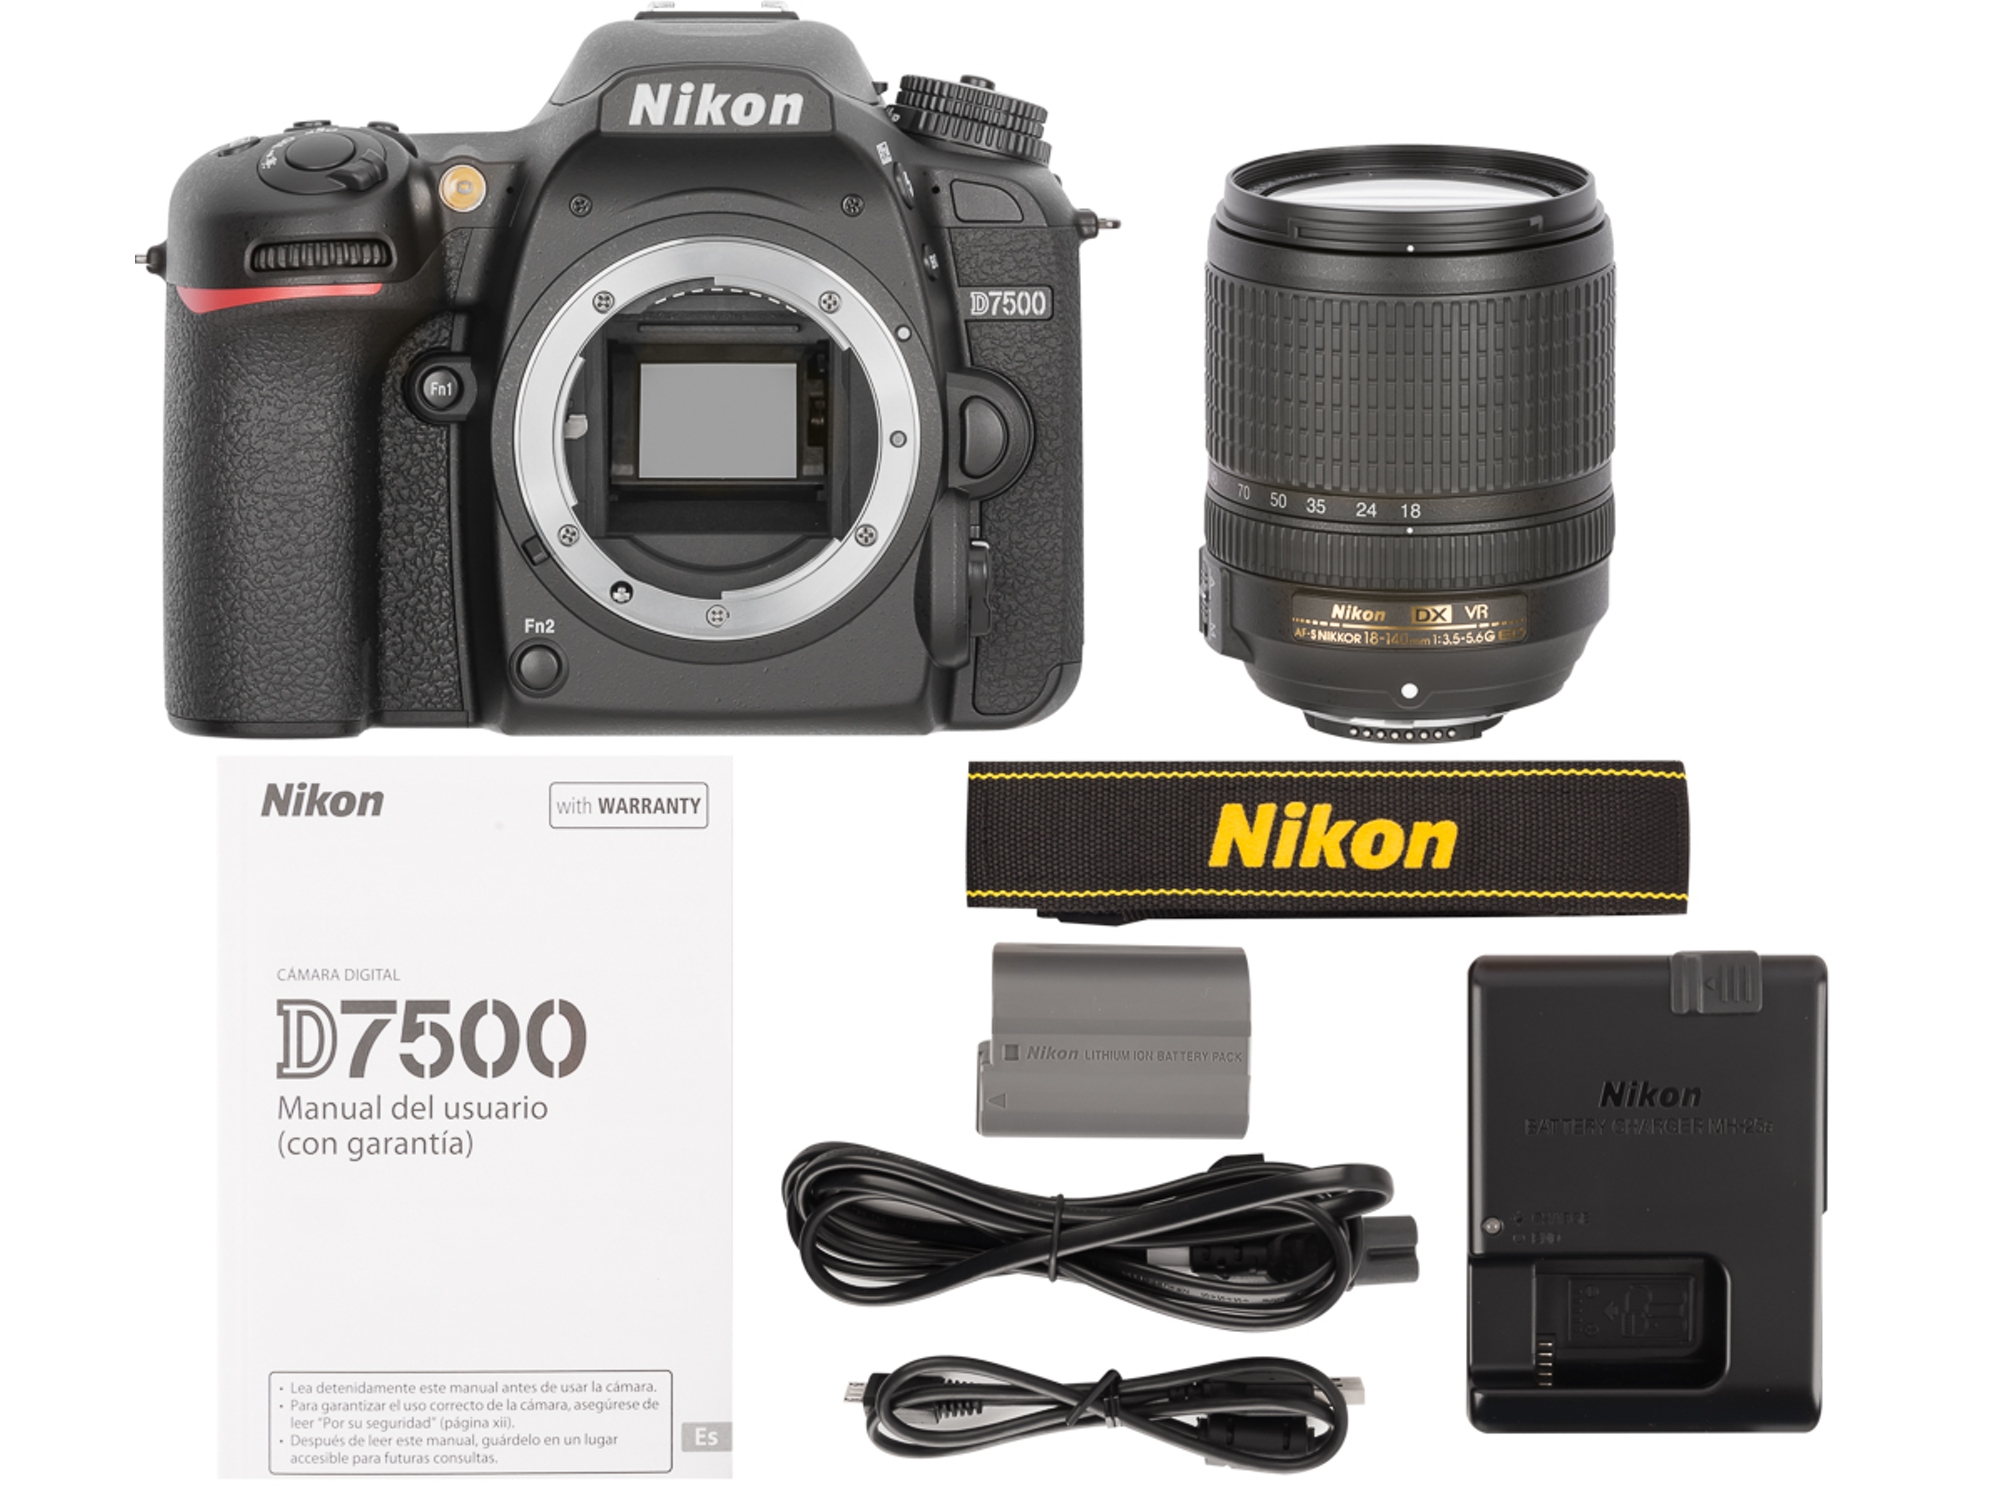 Camara Nikon D7500 Lente 18-140 Sensor CMOS de formato DX de 20.9MP